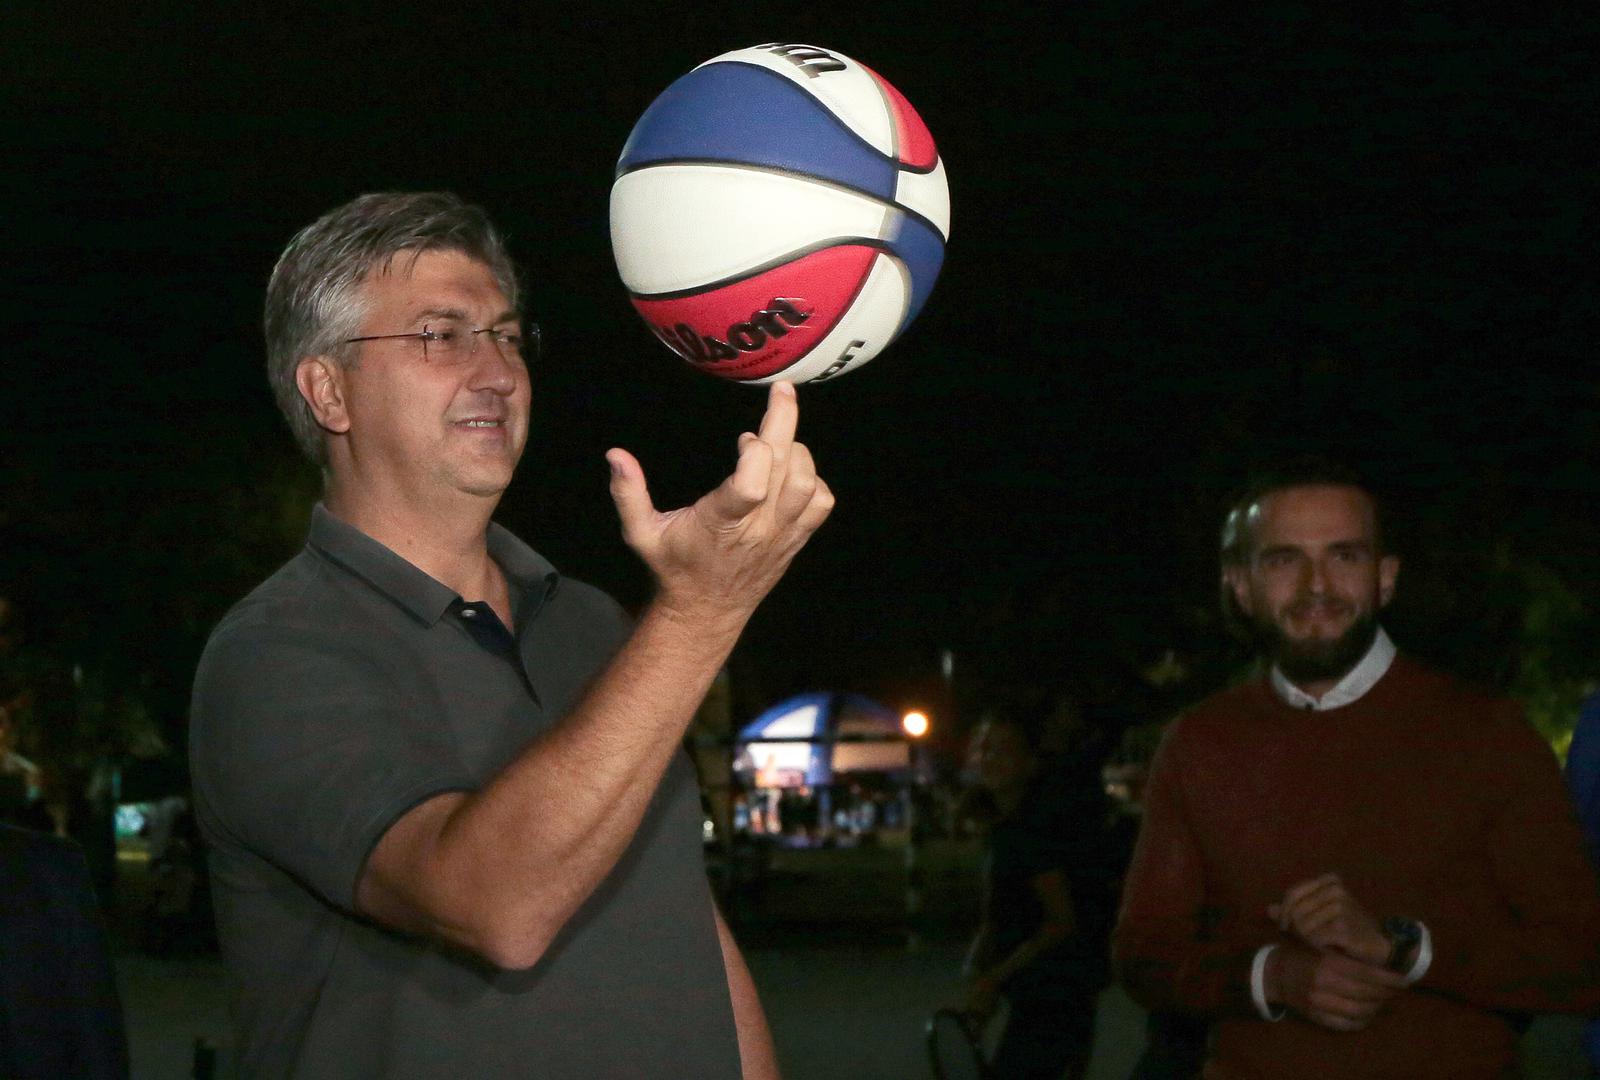 Premijer Andrej Plenković sinoć se na svečanom otvorenju Europskog tjedna sporta na zagrebačkom Jarunu pojavio u opuštenom izdanju, a onda je i pokazao svoje košarkaške vještine.